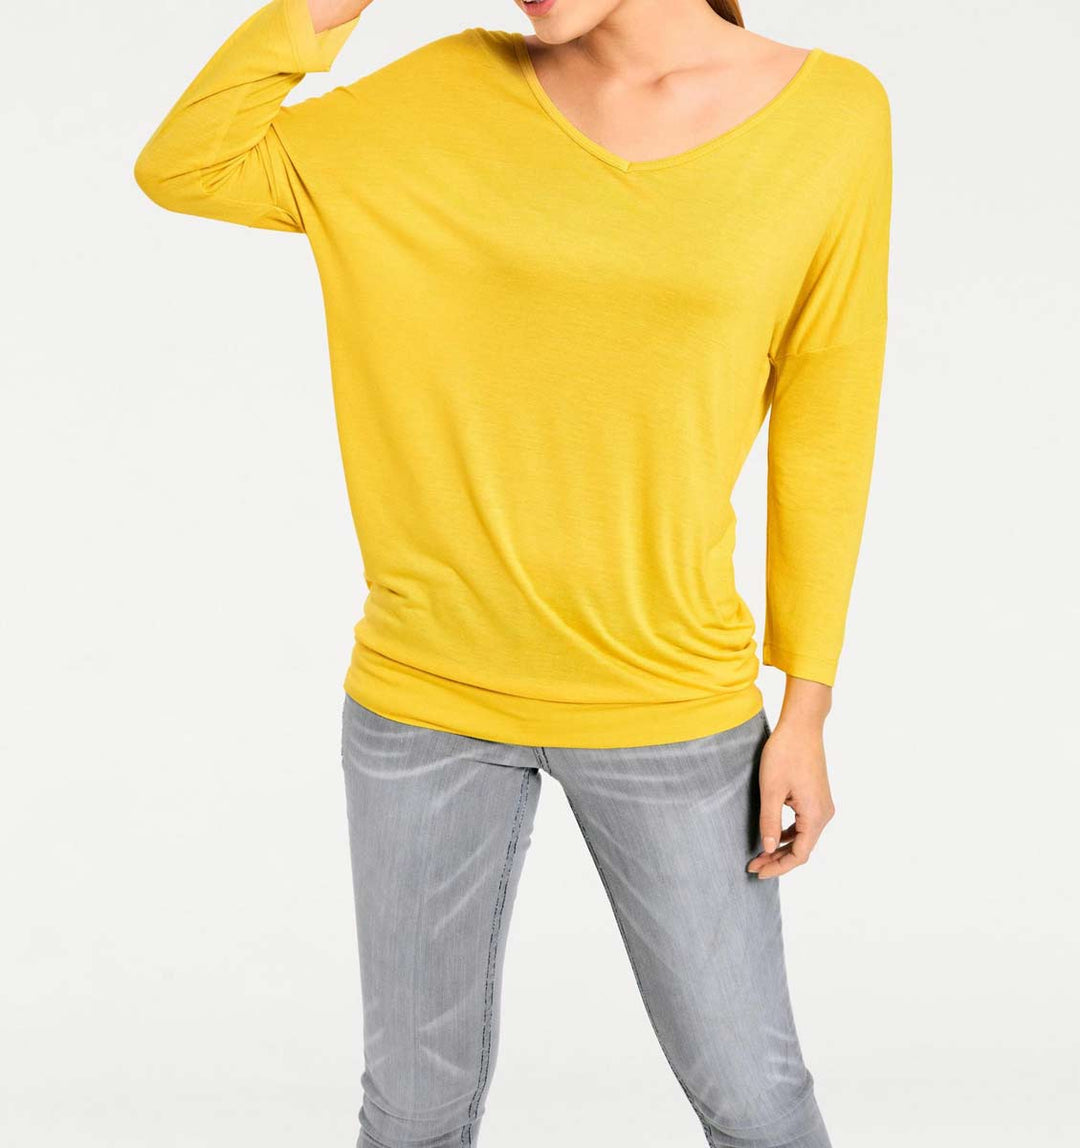 Heine - Best Connections Damen Oversized-Shirt, gelb